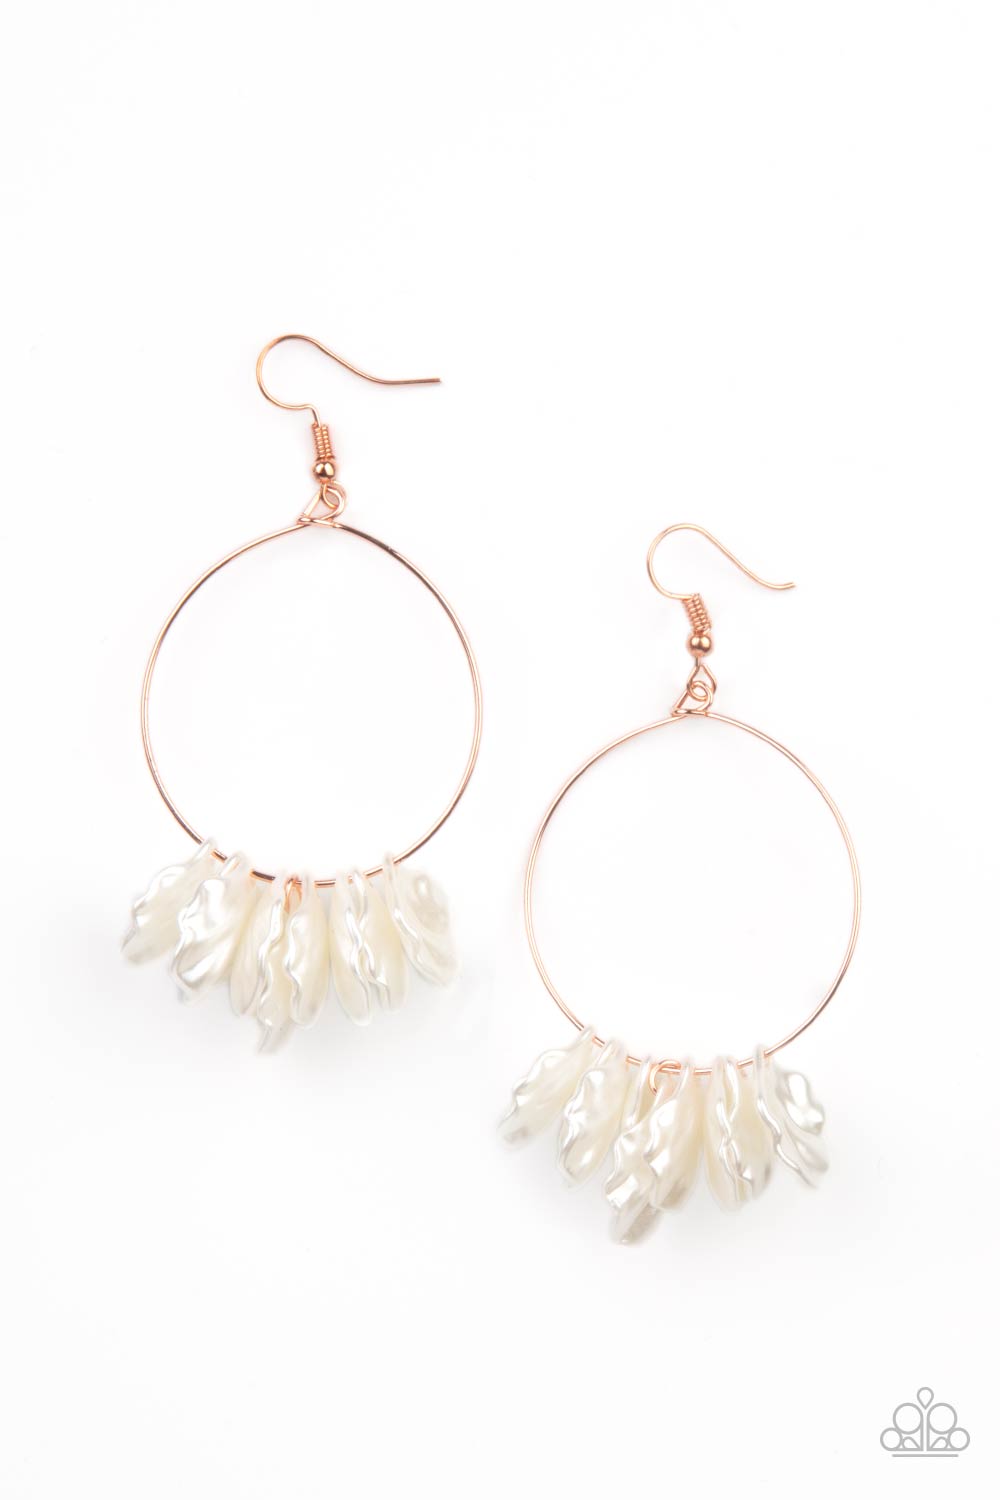 Sailboats and Seashells - Copper Earrings - Princess Glam Shop